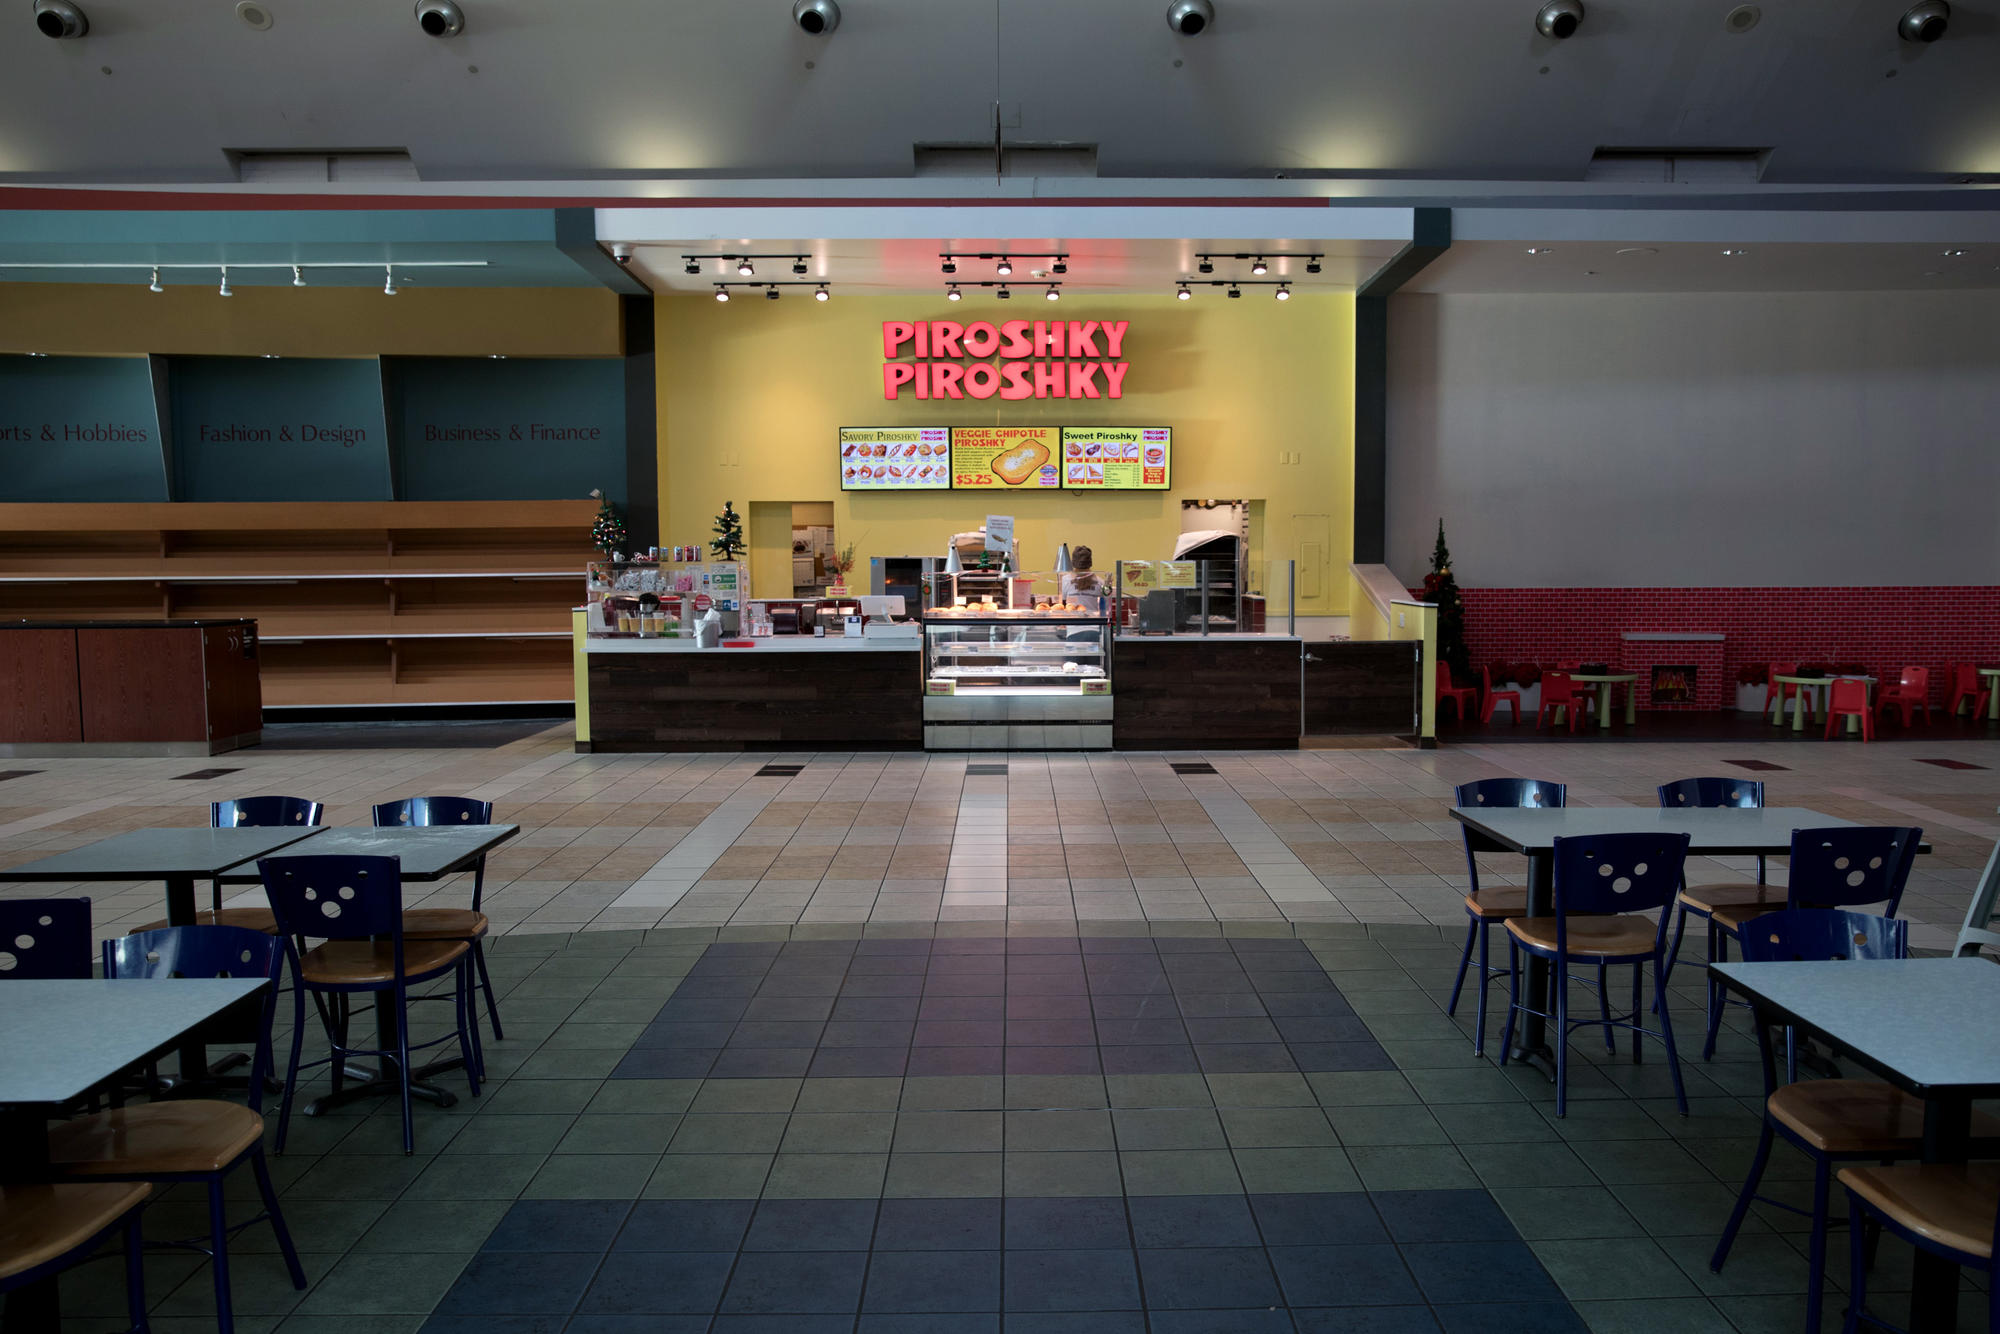 Piroshky Piroshky stall next to empty food court spots